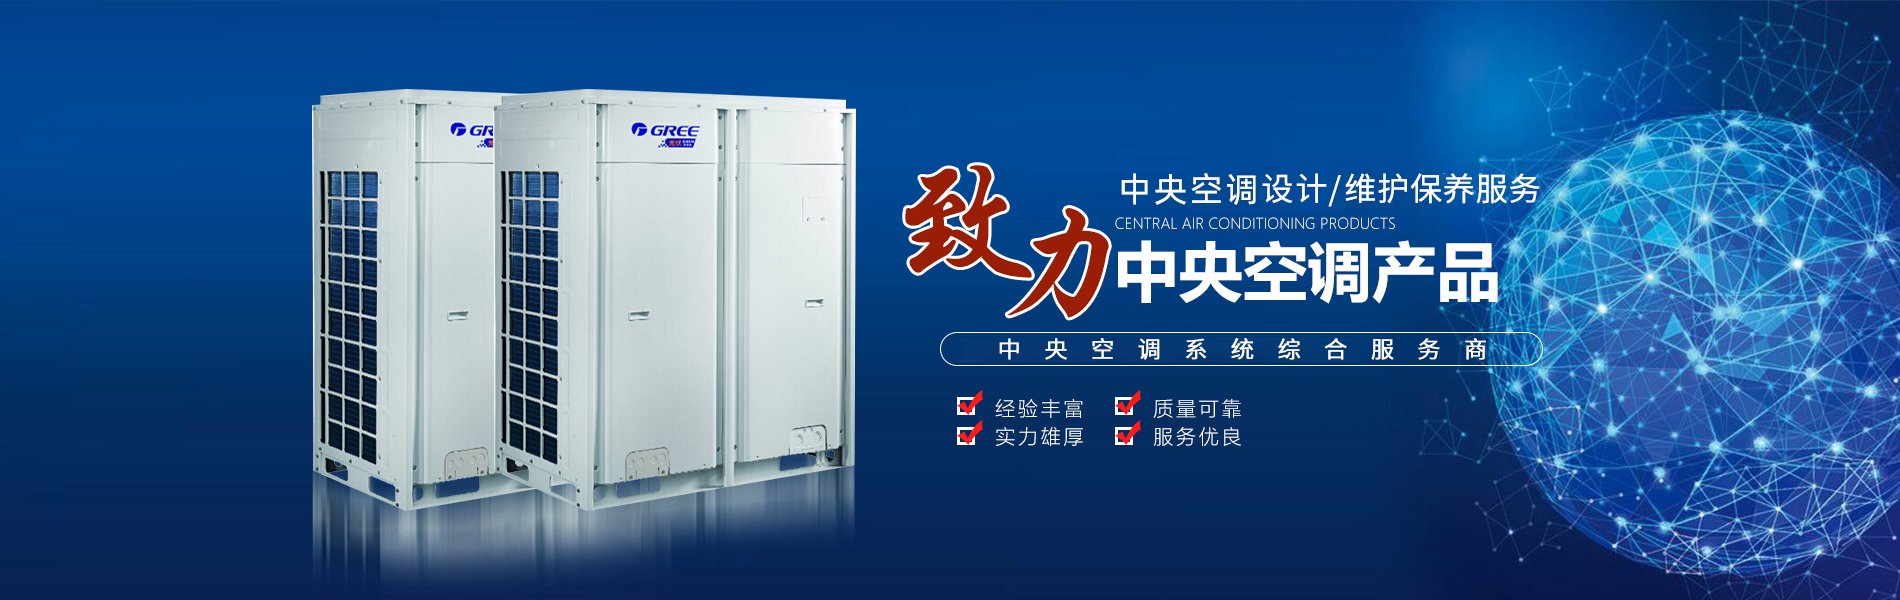 天津明怡林机电设备安装工程有限公司